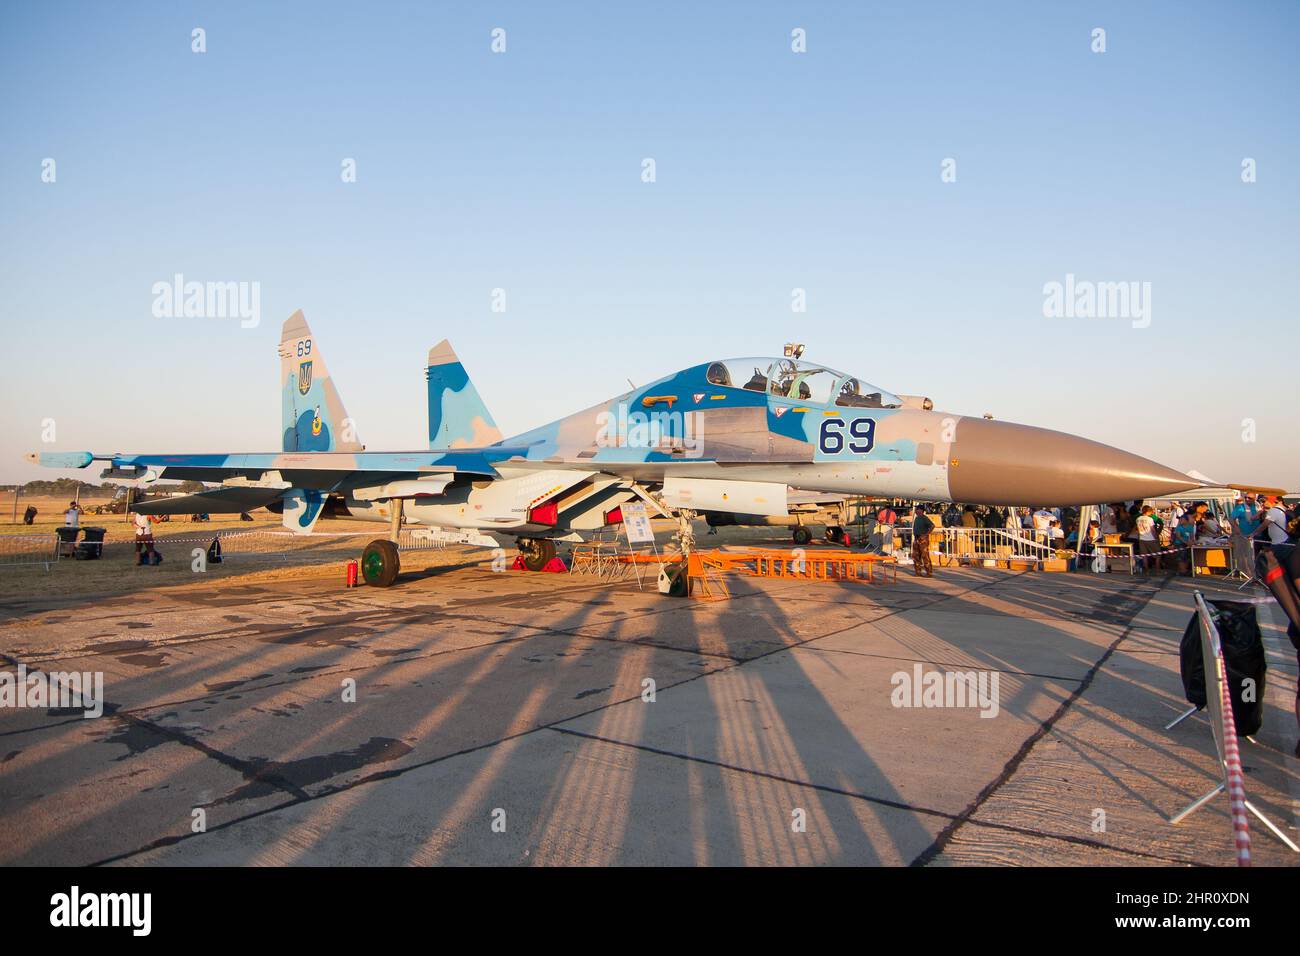 L'armée de l'air ukrainienne Sukhoi SU-27 a un avion de chasse au sol lors d'un spectacle aérien Banque D'Images